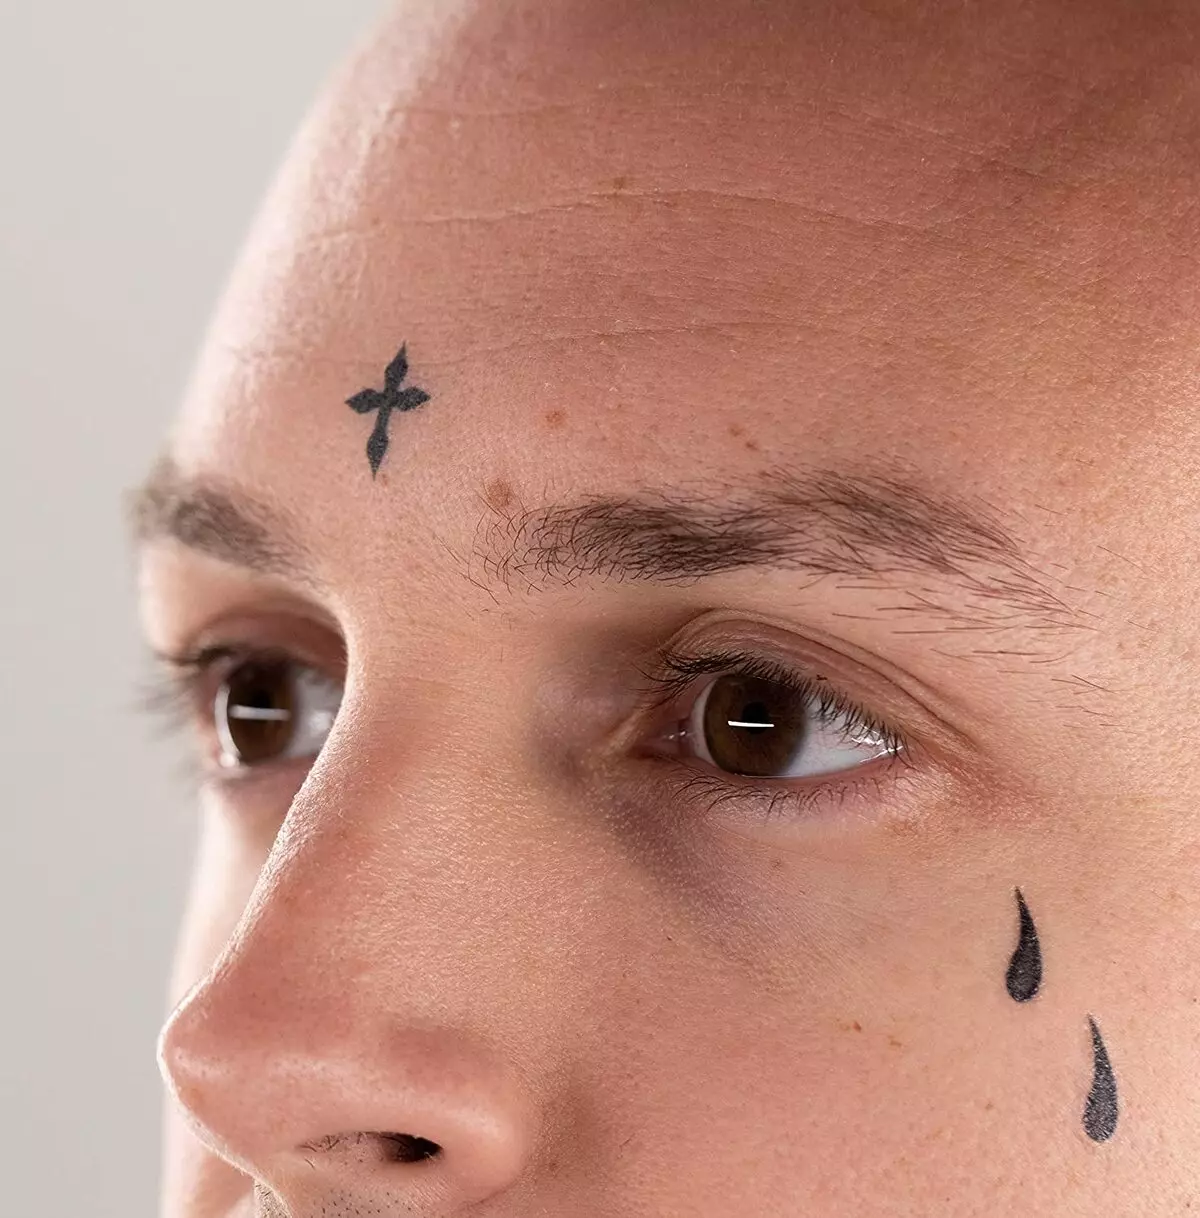 ଅନୁବାଦିତ ଟାଟୋ (45 ଫଟୋ): କିପରି ଶରୀର ଉପରେ ଅସ୍ଥାୟୀ ଟାଟୋଗୁଡିକ-stickers ଶିରିଷ କରିବା? ଦୀର୍ଘକାଳ ଯେ ଧରି ମୁଖ ଏବଂ ଅନ୍ୟାନ୍ୟ ଟାଟୋ ଉପରେ Tattooo-freckles 14269_38